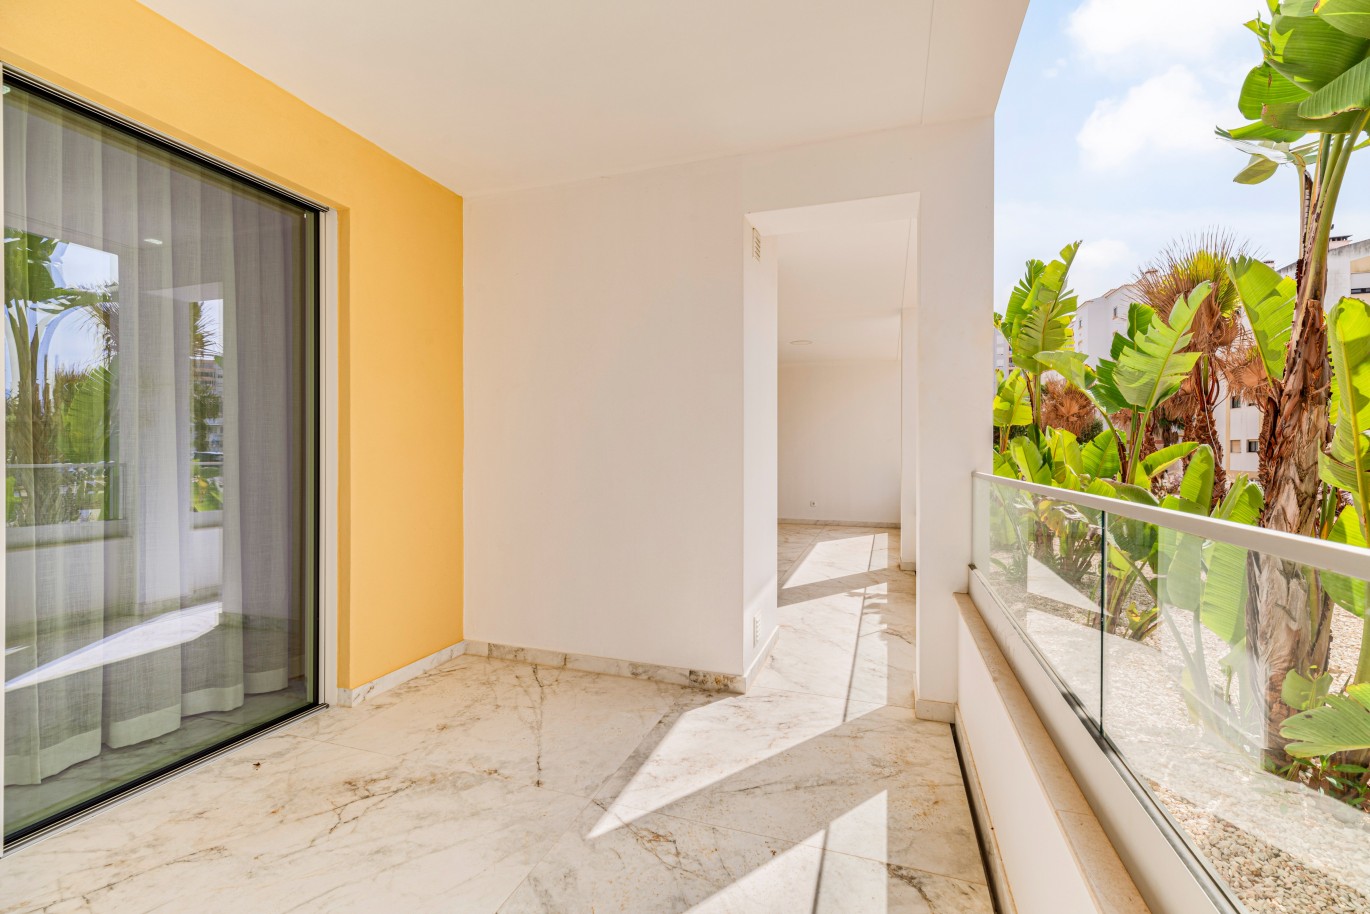 Verkauf einer Wohnung im Bau, mit Terrasse, Lagos, Algarve, Portugal_238378